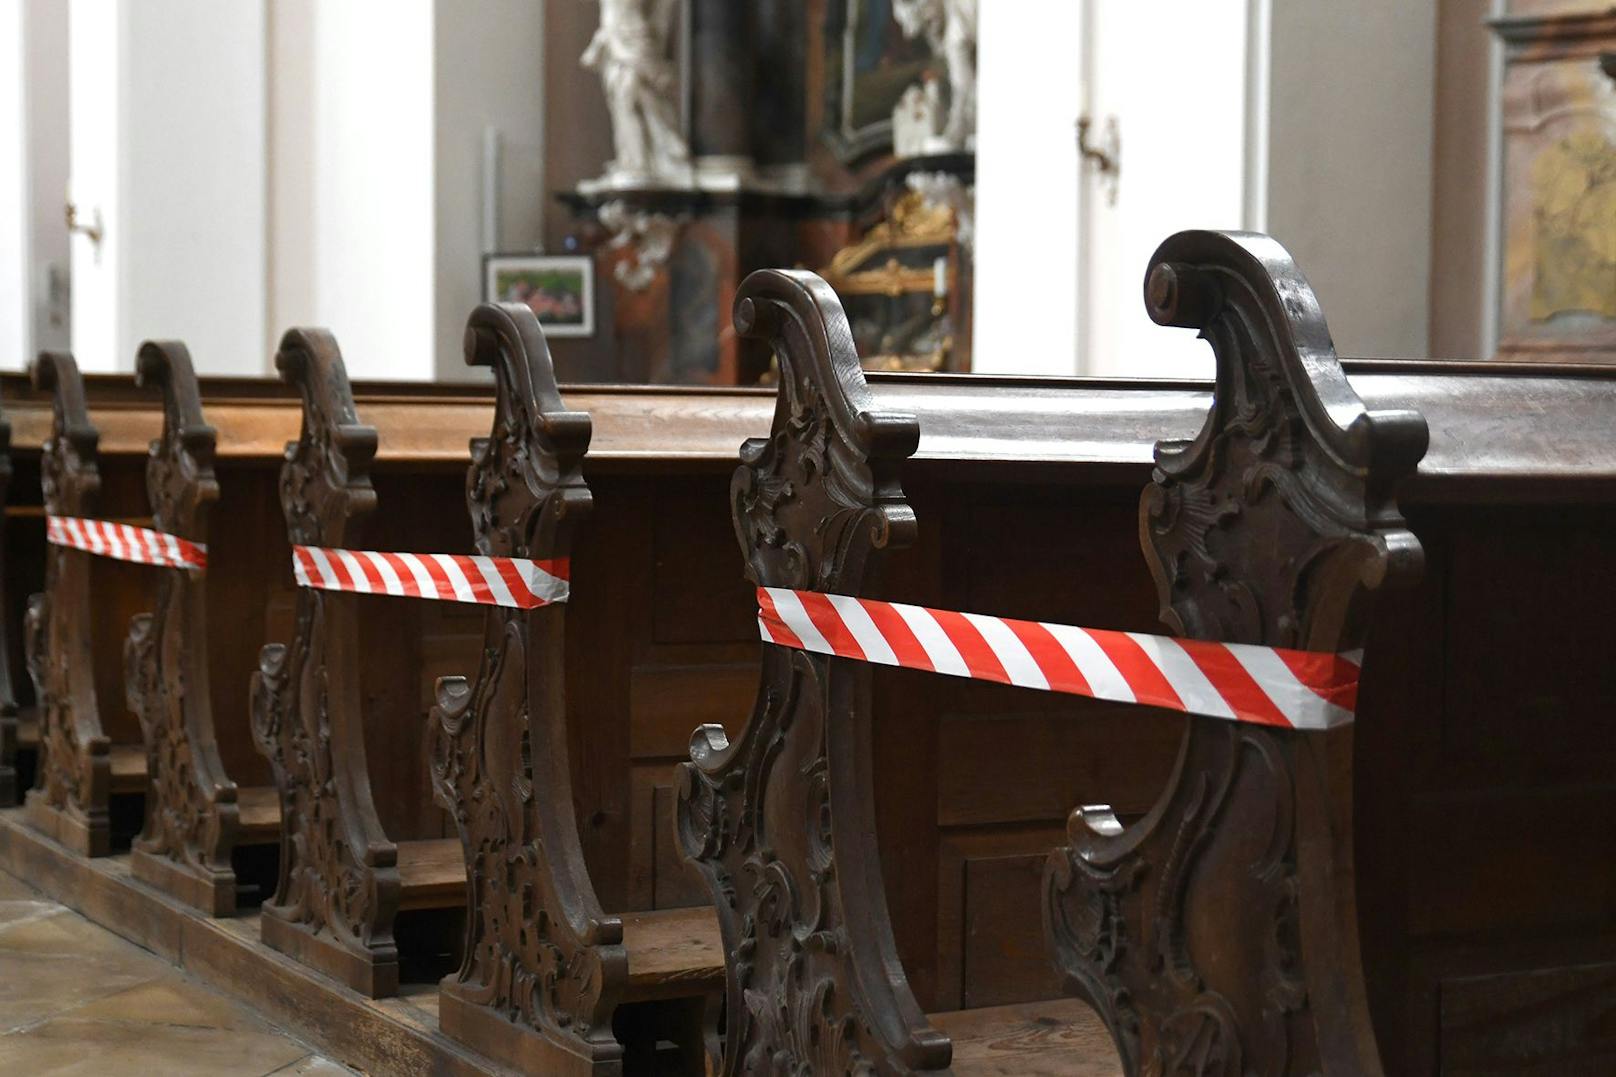 Absperrung für Kirchenbesucher wegen der Corona-Abstandsregel in der Stiftskirche Engelhartszell